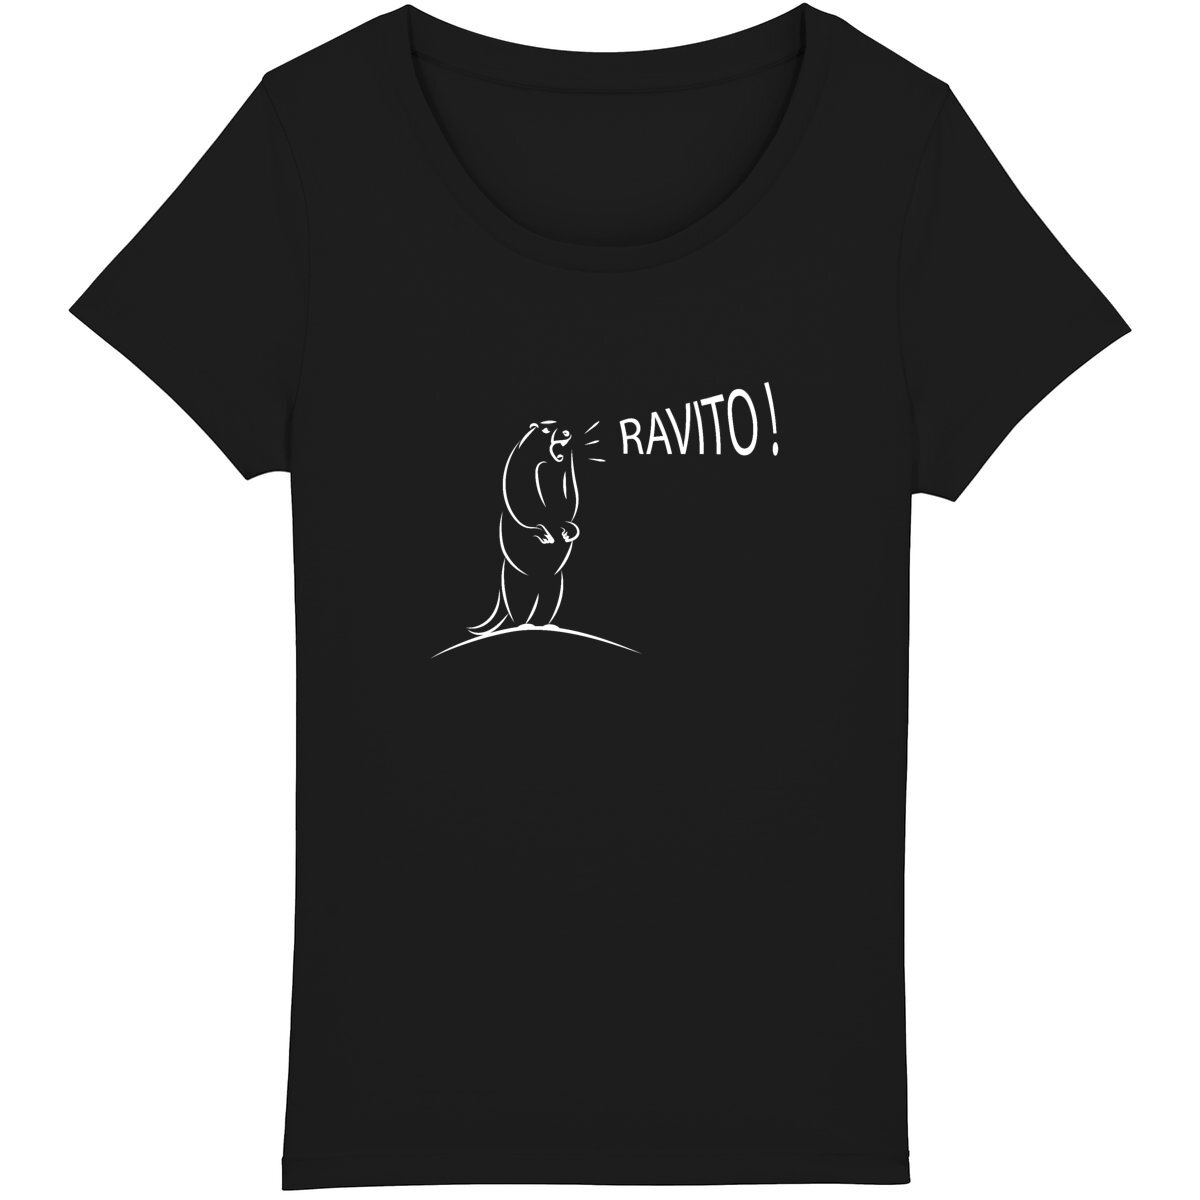 T-shirt femme avec marmotte adorable criant "Ravito!"